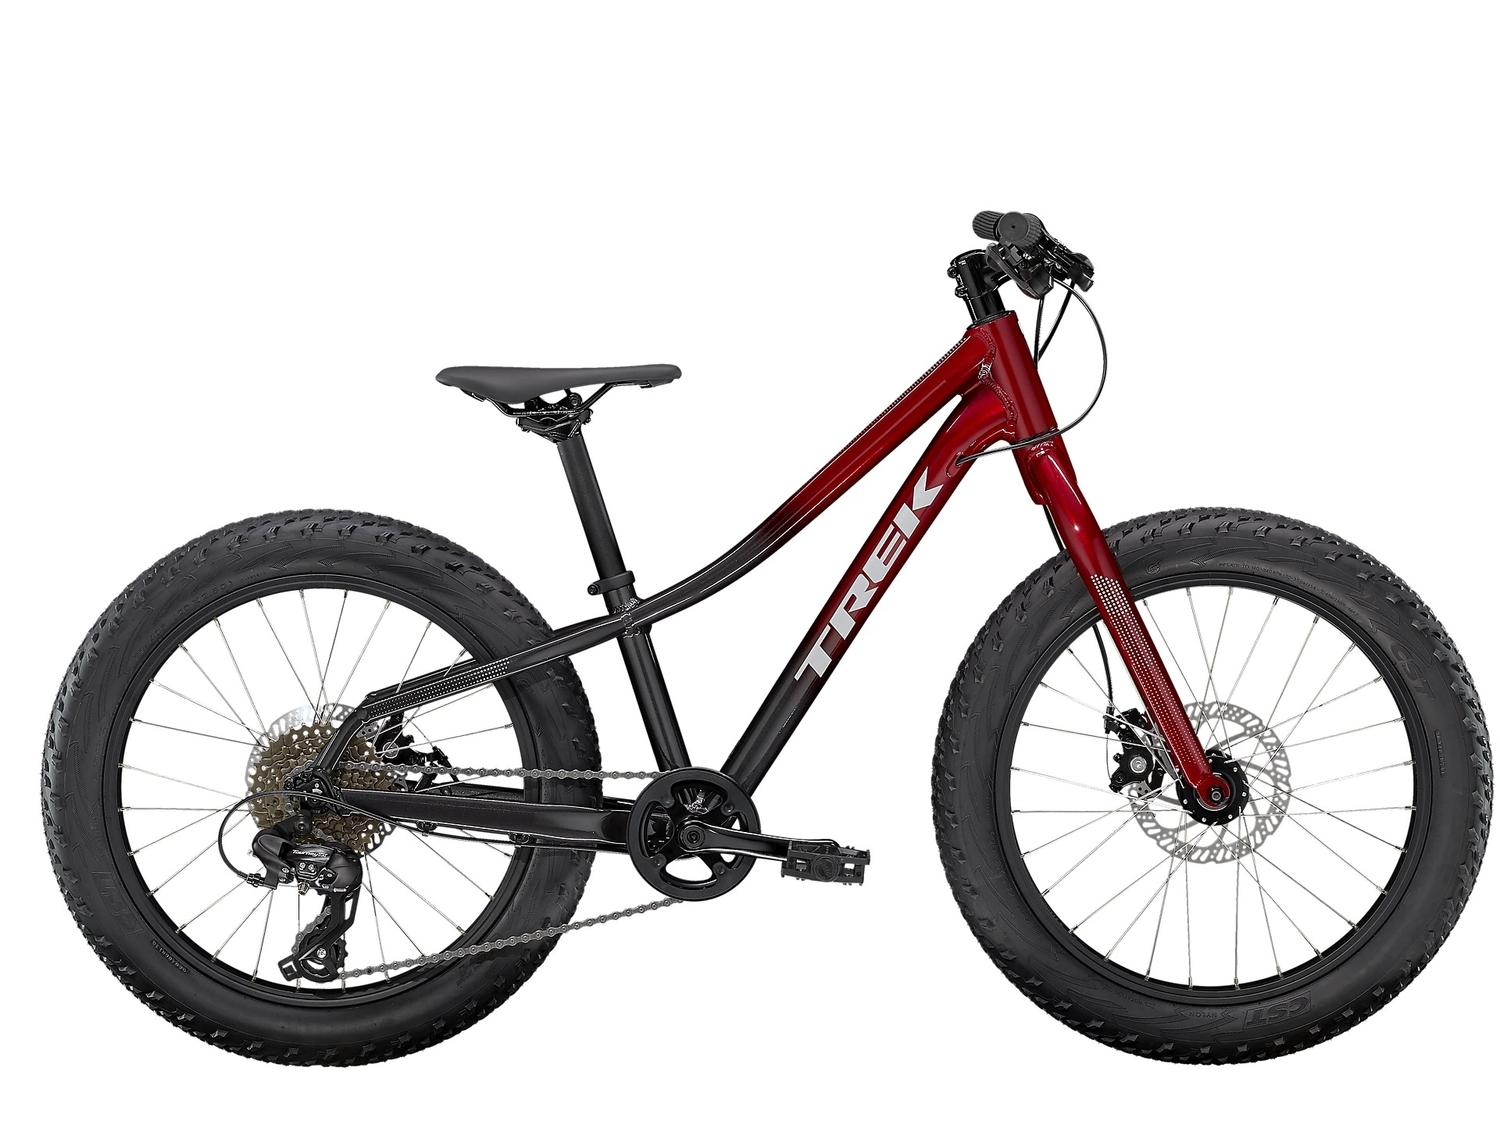 Детский велосипед Trek Roscoe 20, год 2022, цвет Красный